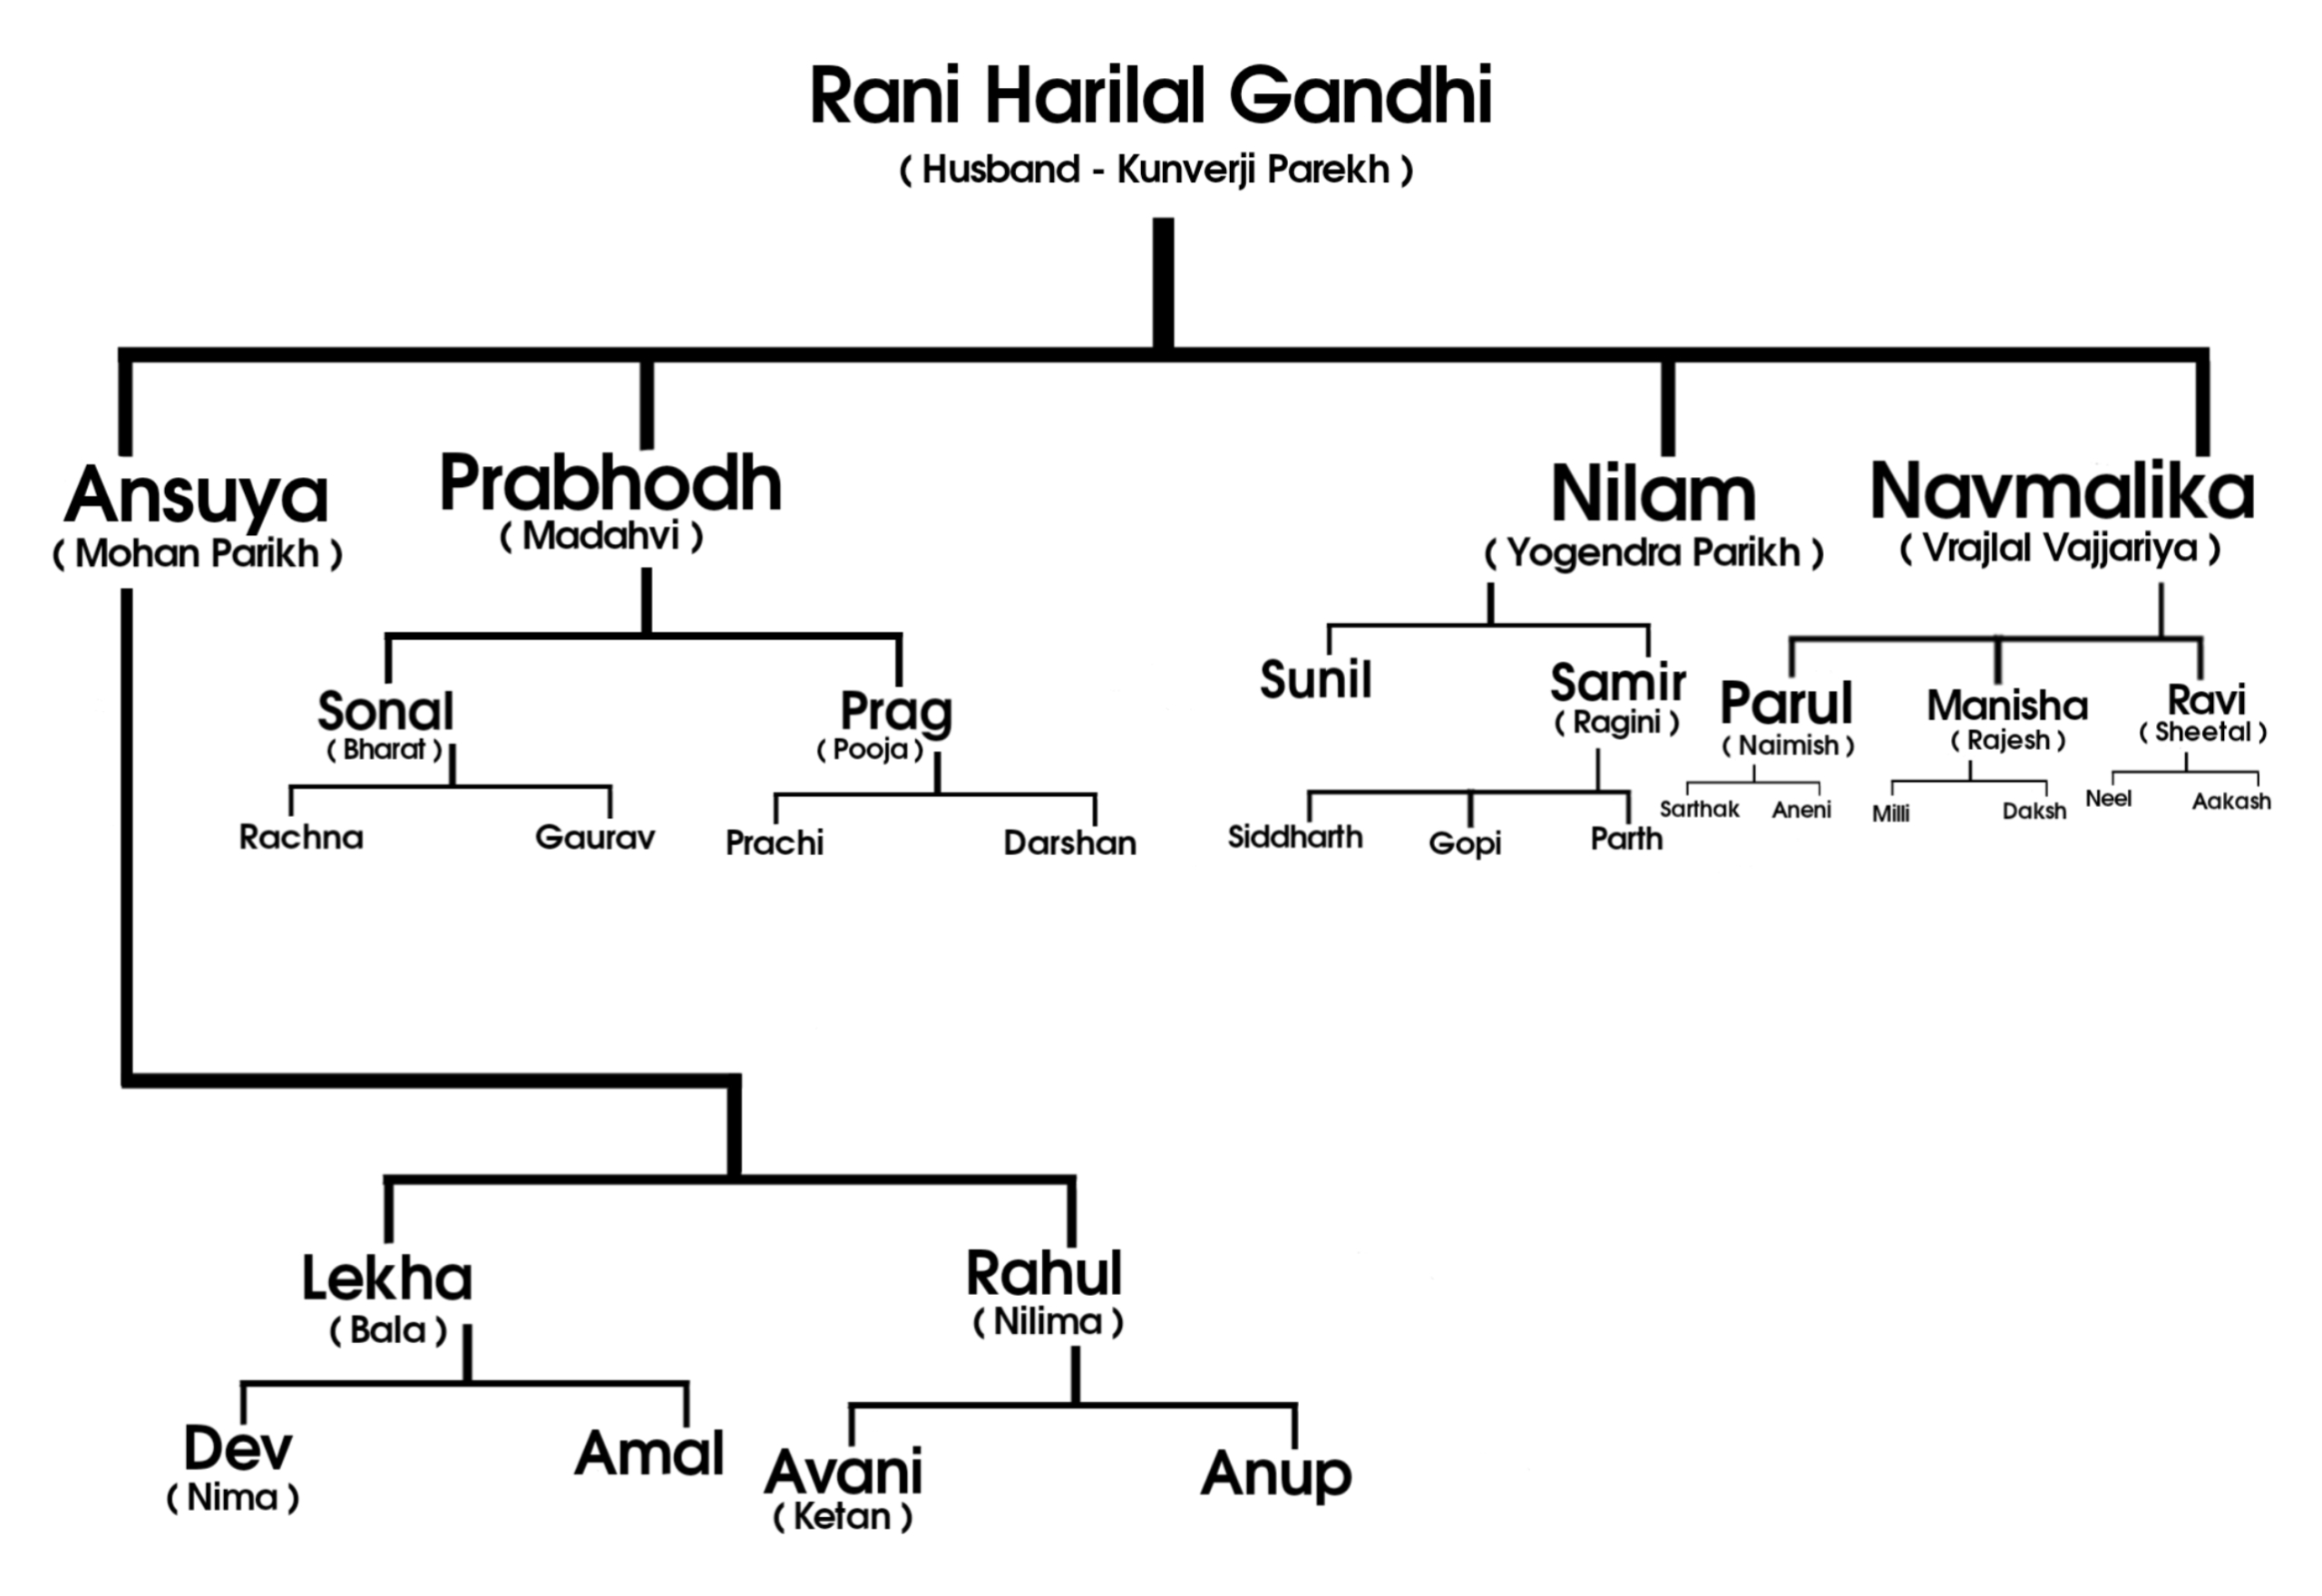 Mahatma Gandhi Family tree